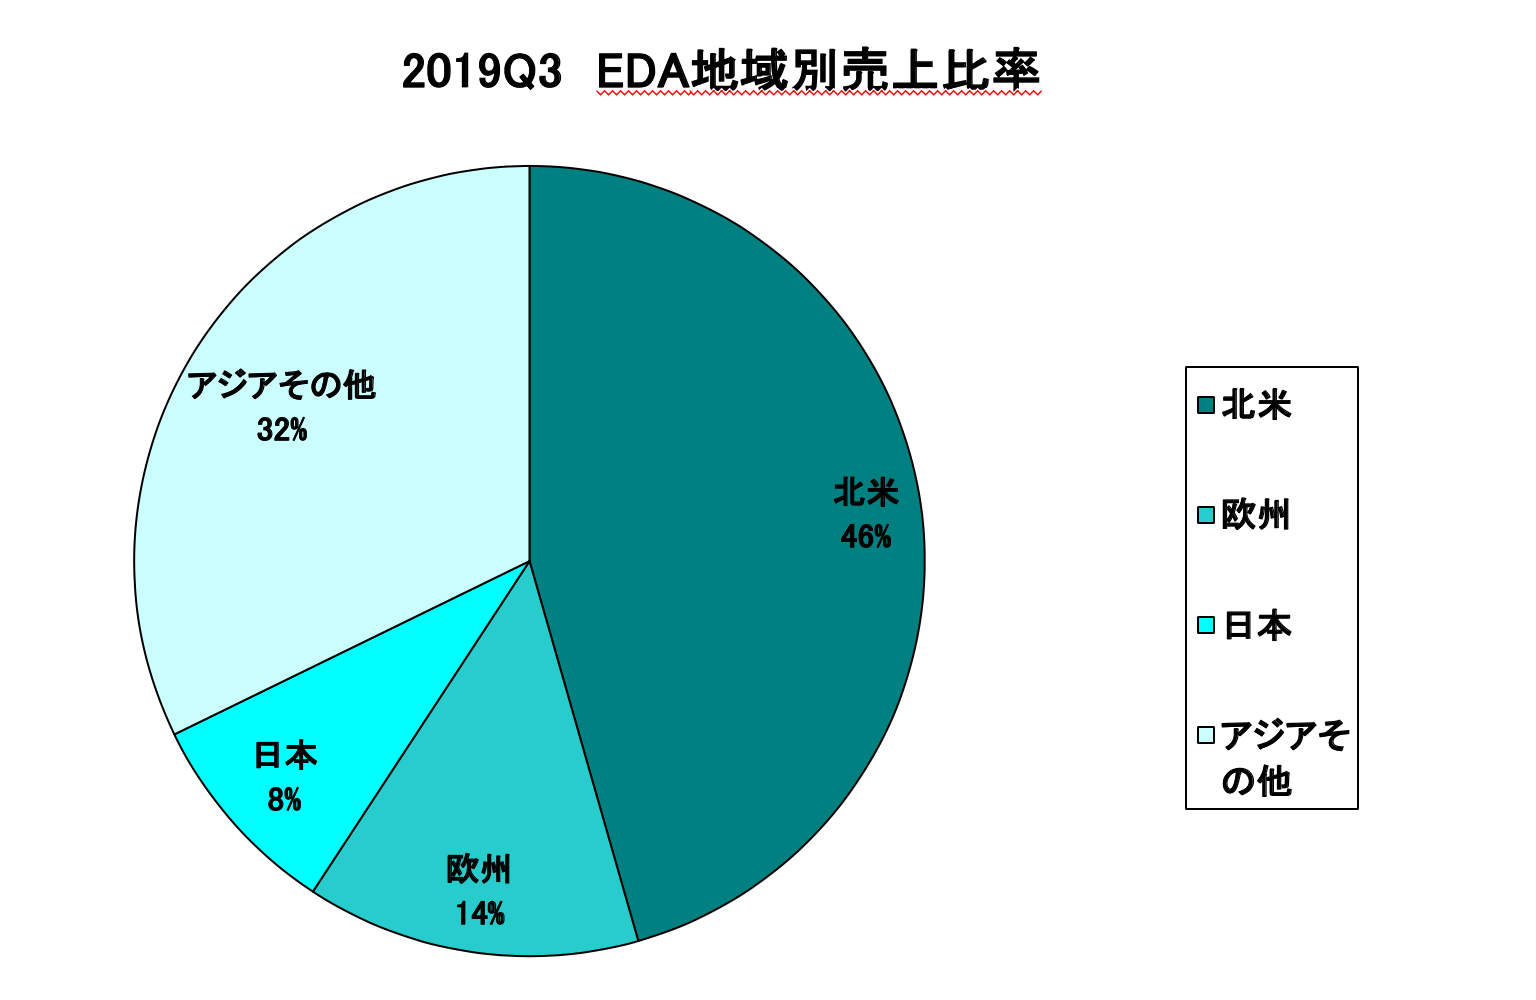 https://www.eda-express.com/%E3%82%B9%E3%82%AF%E3%83%AA%E3%83%BC%E3%83%B3%E3%82%B7%E3%83%A7%E3%83%83%E3%83%88%202020-01-10%209.52.19.png